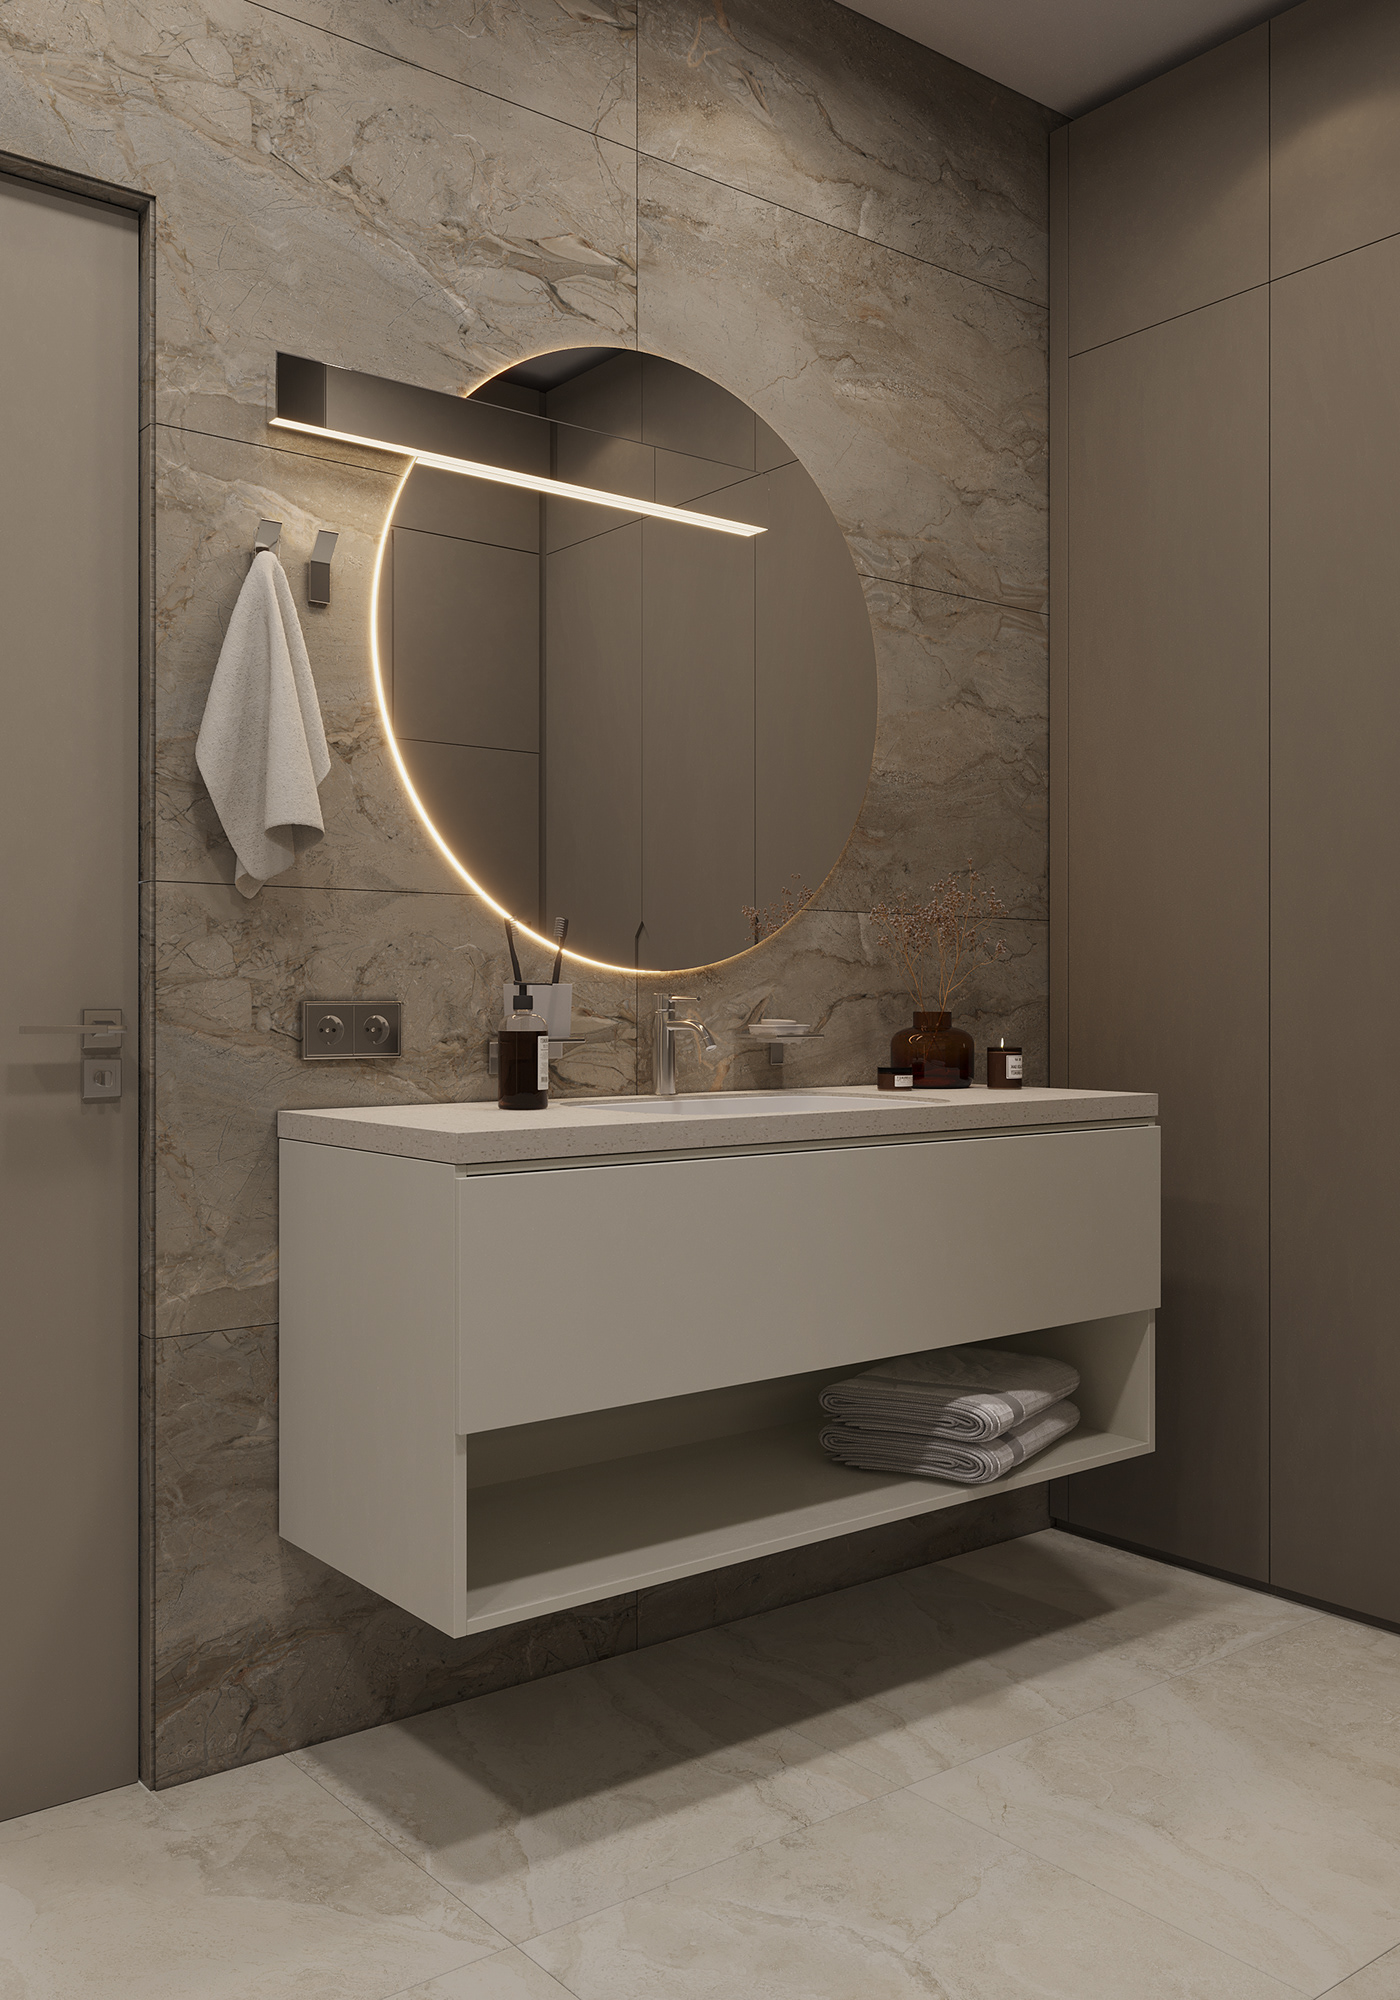 3ds max bathroom beige corona design Interior interior design  modern Render visualization